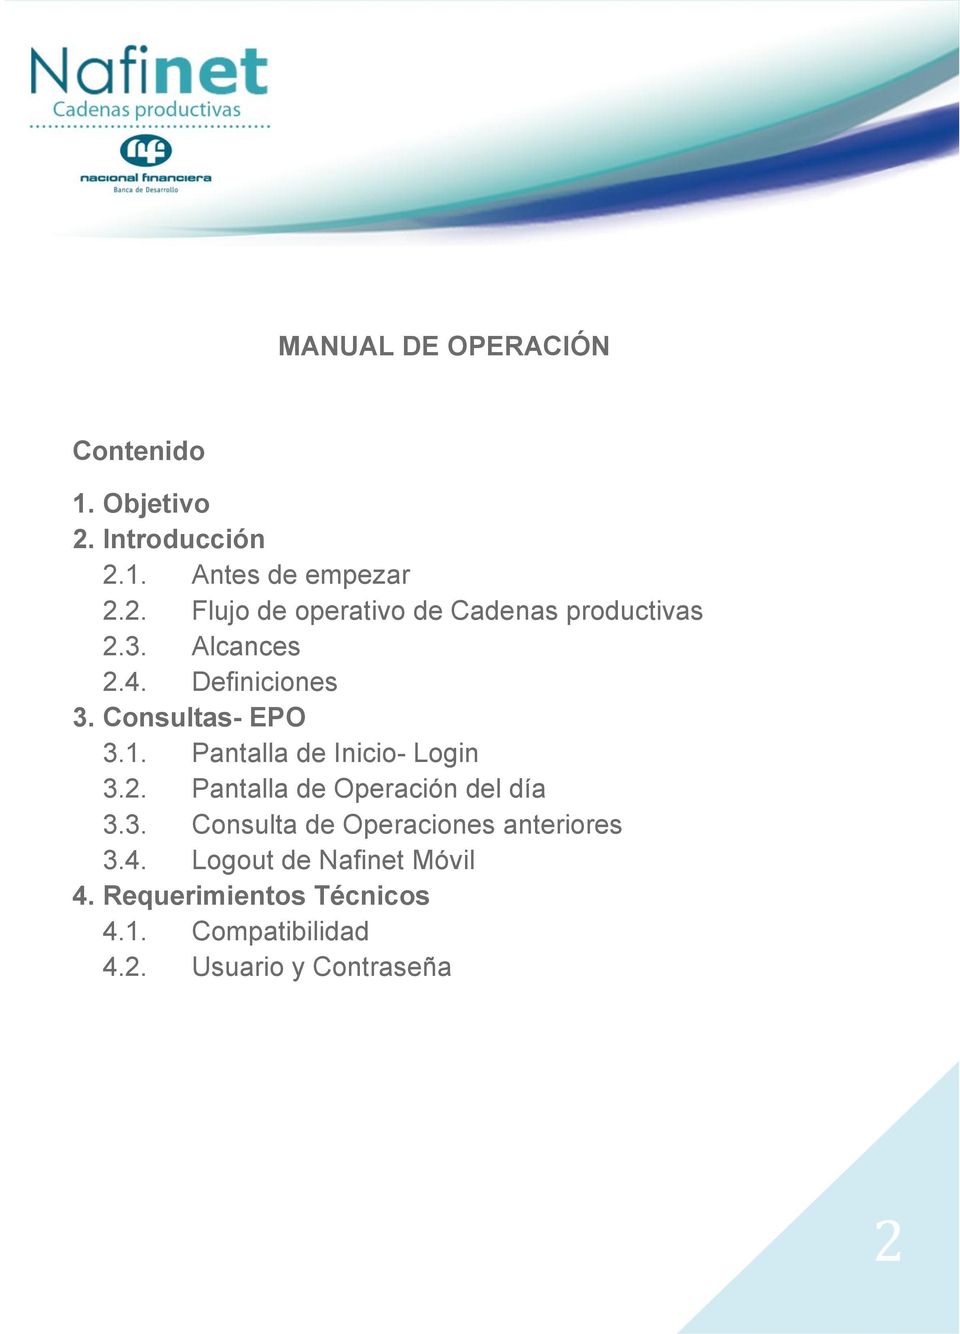 3. Consulta de Operaciones anteriores 3.4. Logout de Nafinet Móvil 4. Requerimientos Técnicos 4.